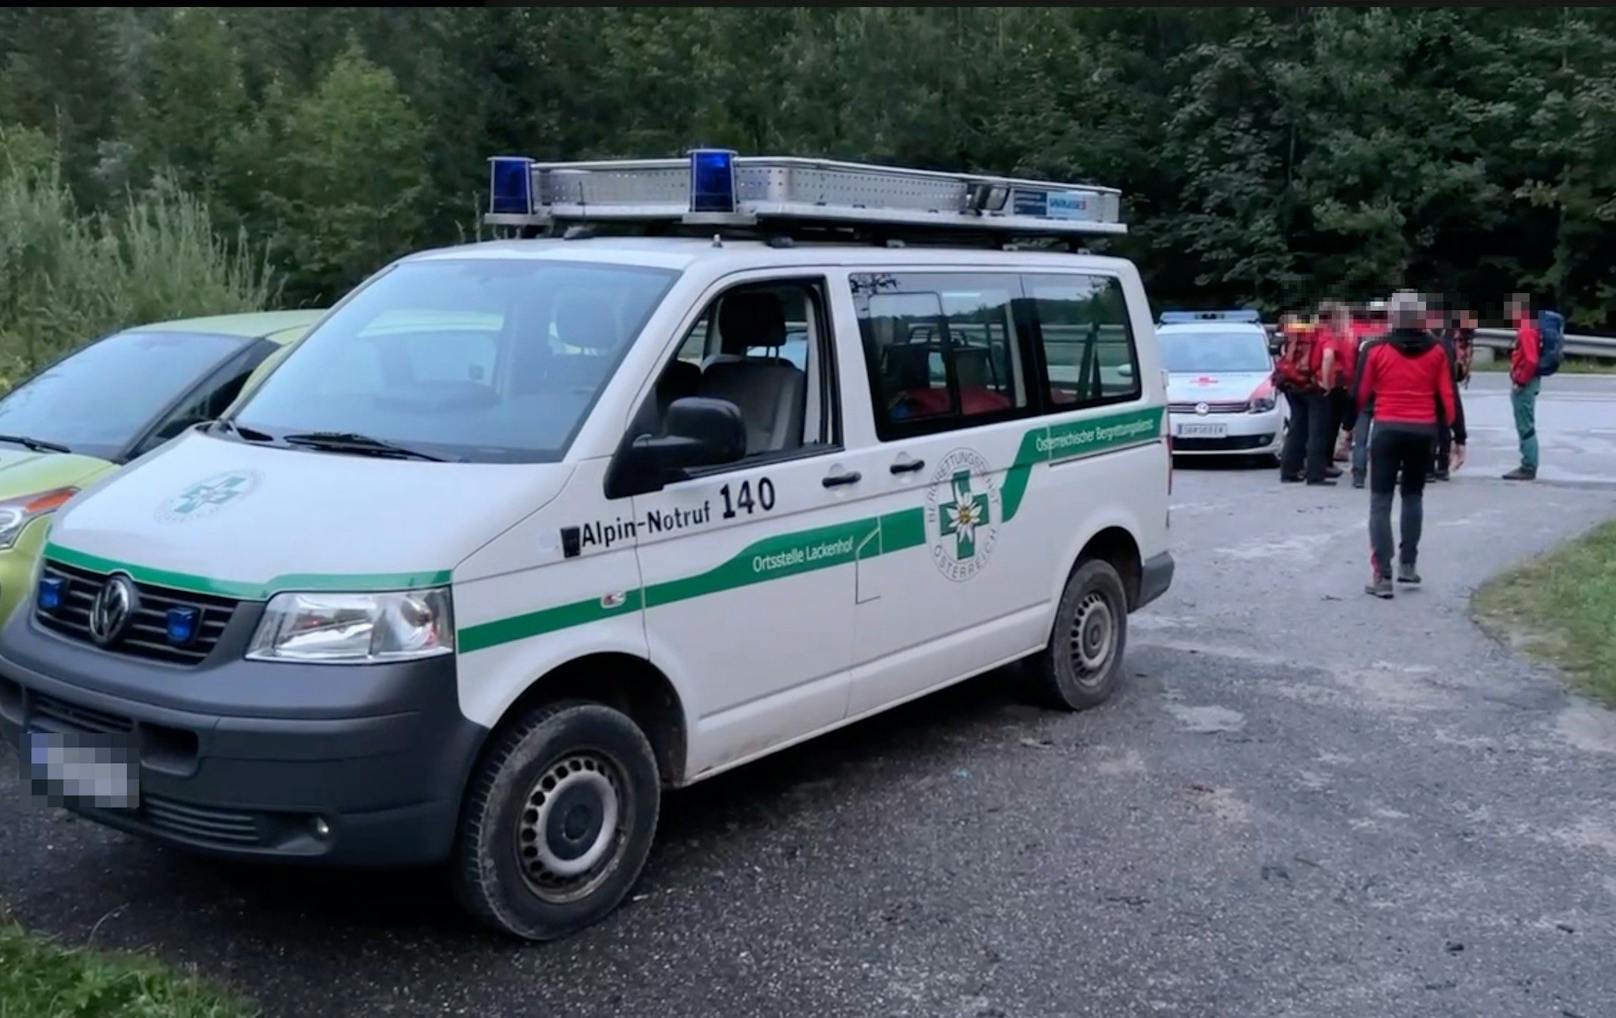 Wanderwege in NÖ nach Tod von 3 Frauen weiter gesperrt